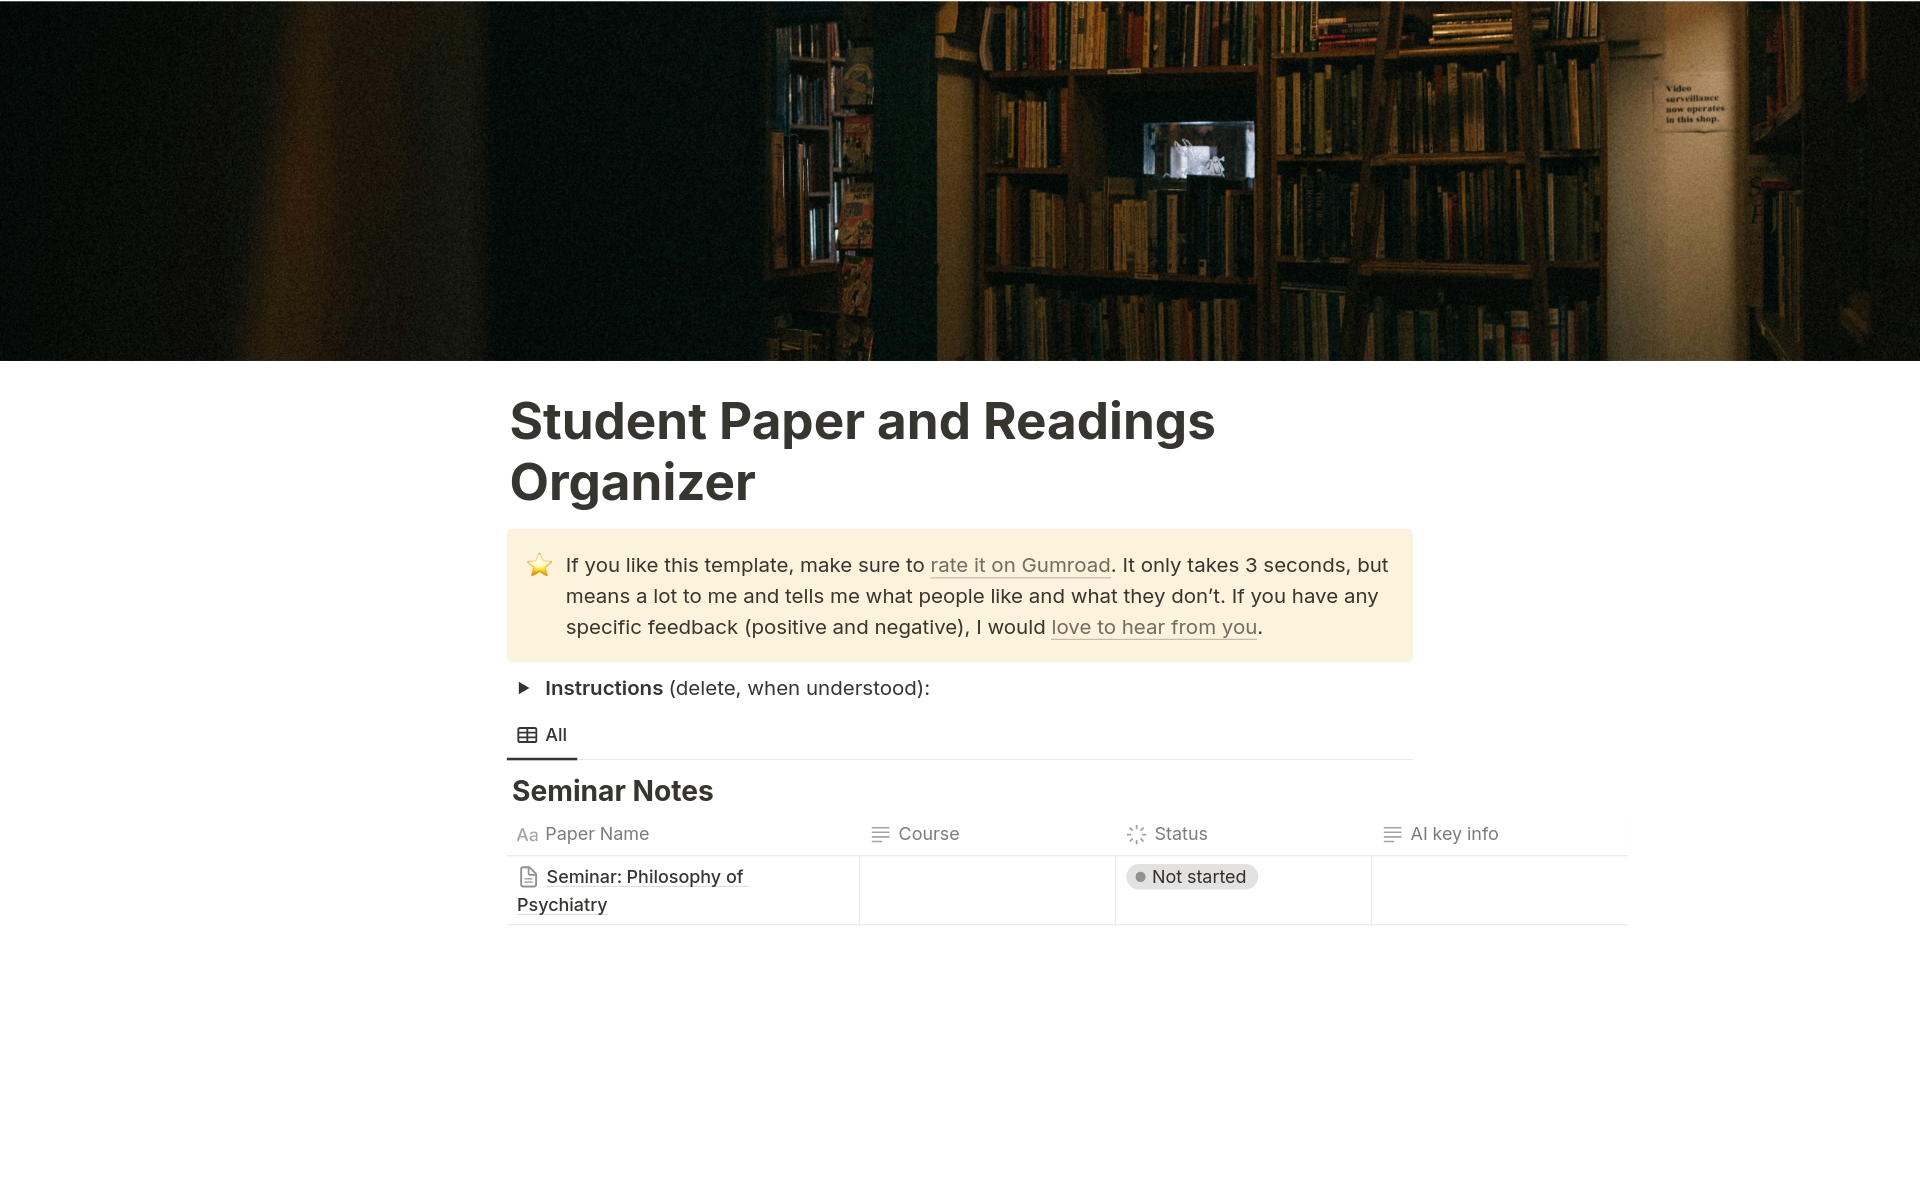 Uma prévia do modelo para Student Paper and Readings Organizer